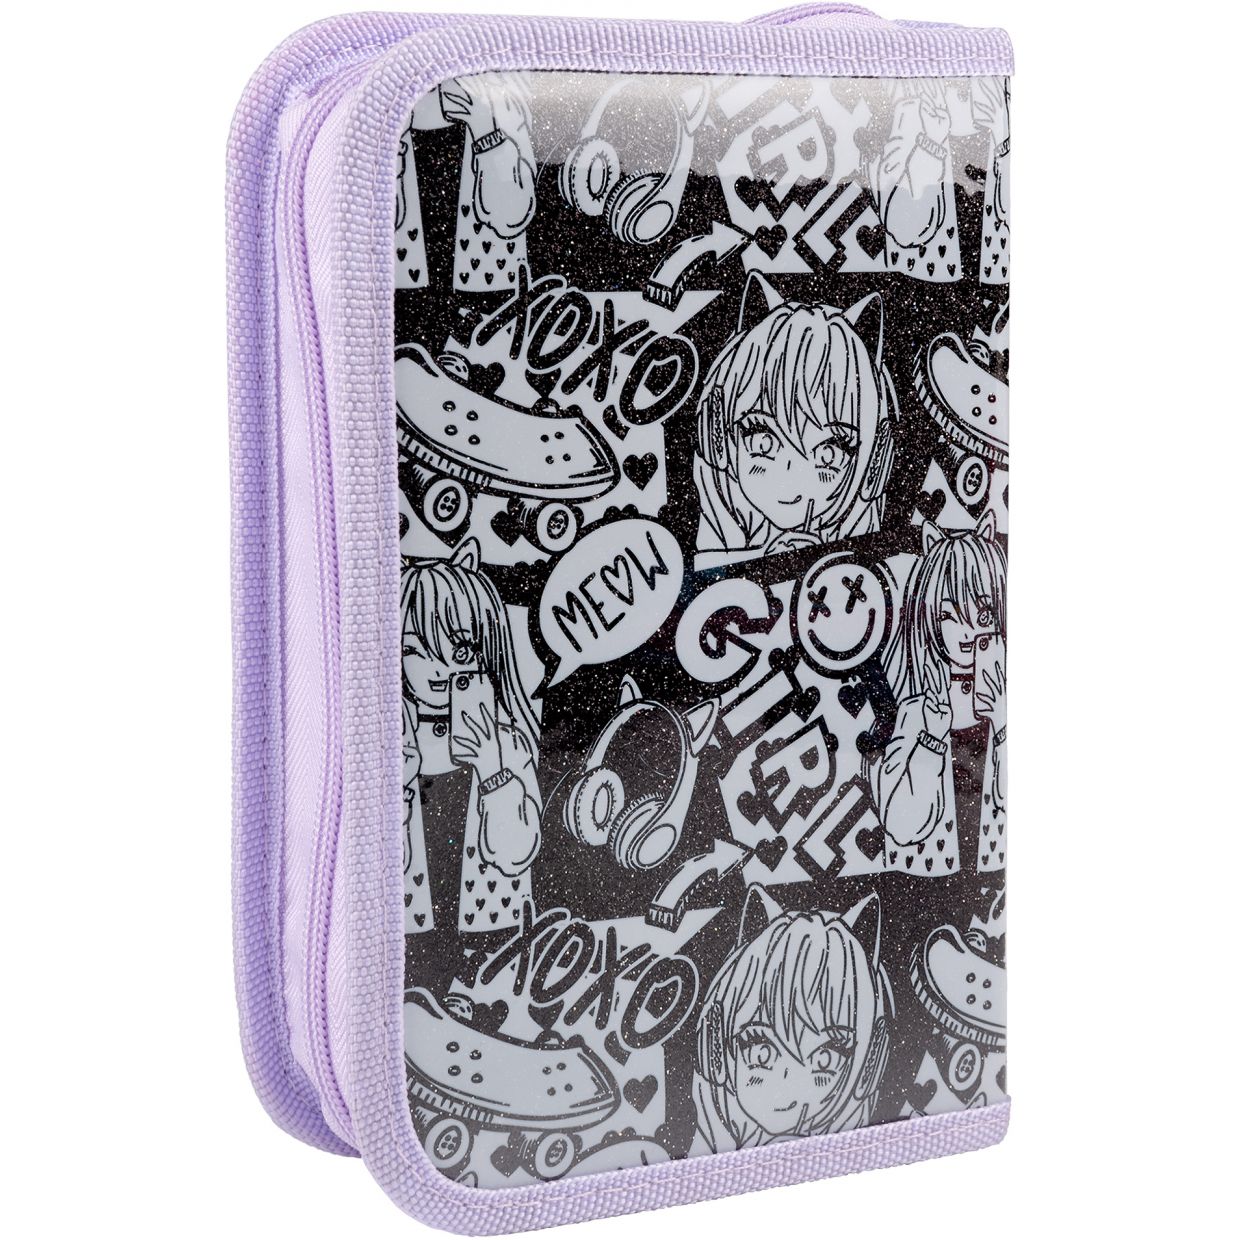 Рюкзак Yes S-101 Collection Anime с пеналом и сумкой (559807) - фото 6